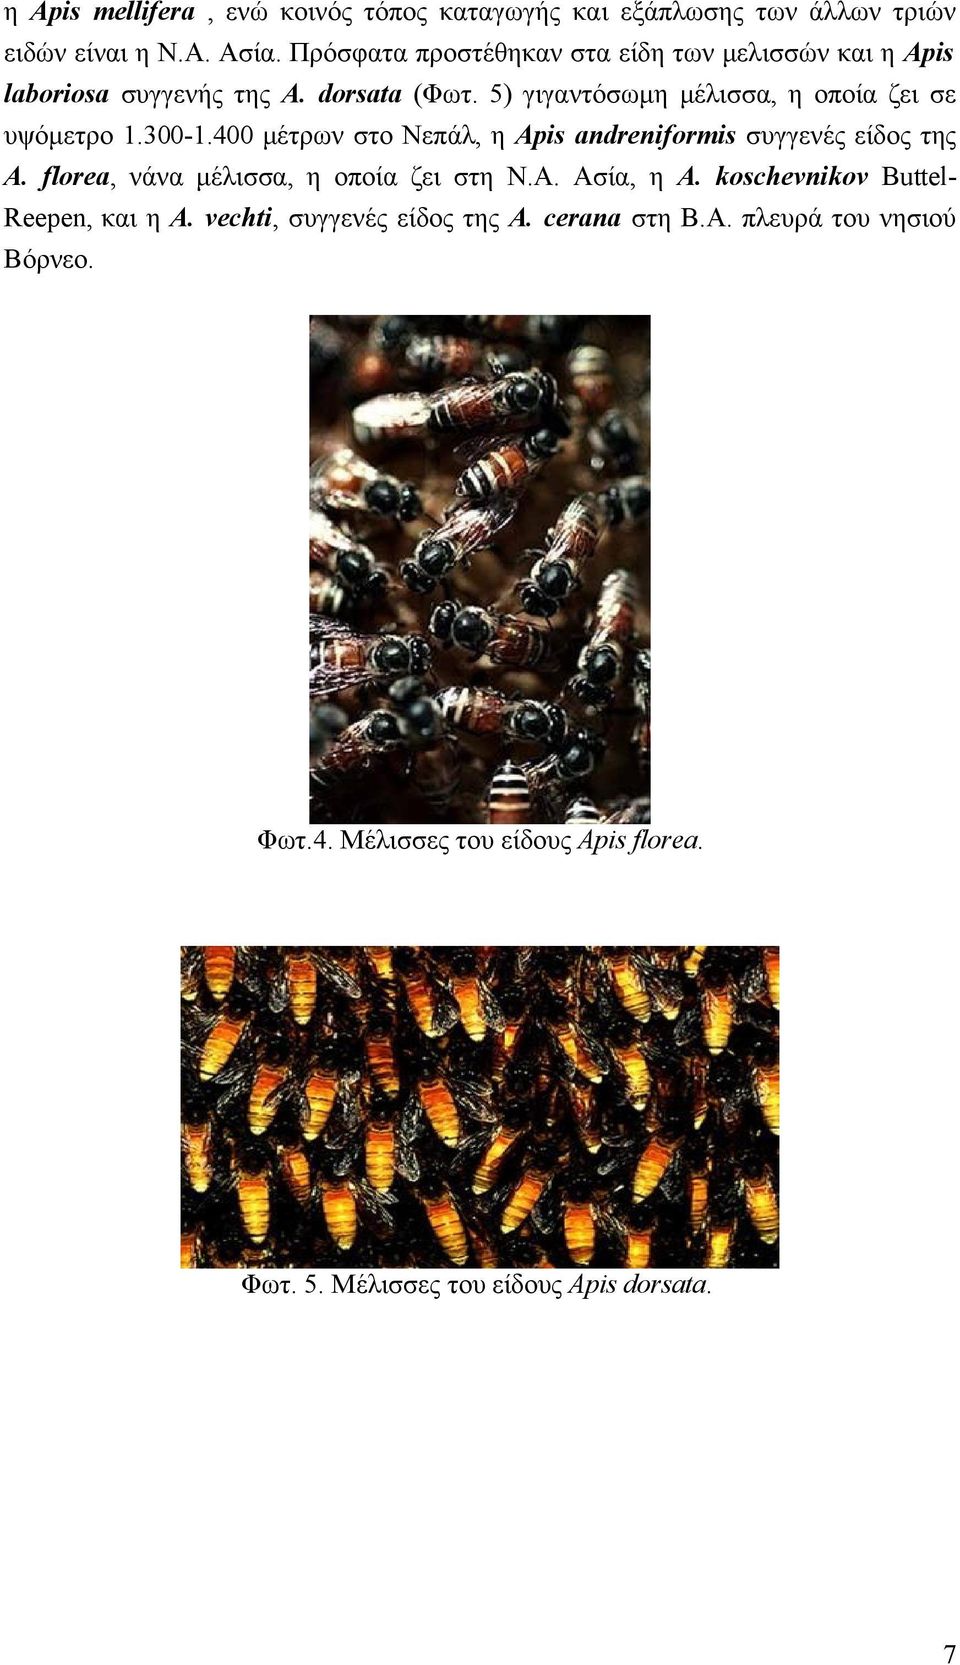 5) γιγαντόσωμη μέλισσα, η οποία ζει σε υψόμετρο 1.300-1.400 μέτρων στο Νεπάλ, η Apis andreniformis συγγενές είδος της A.